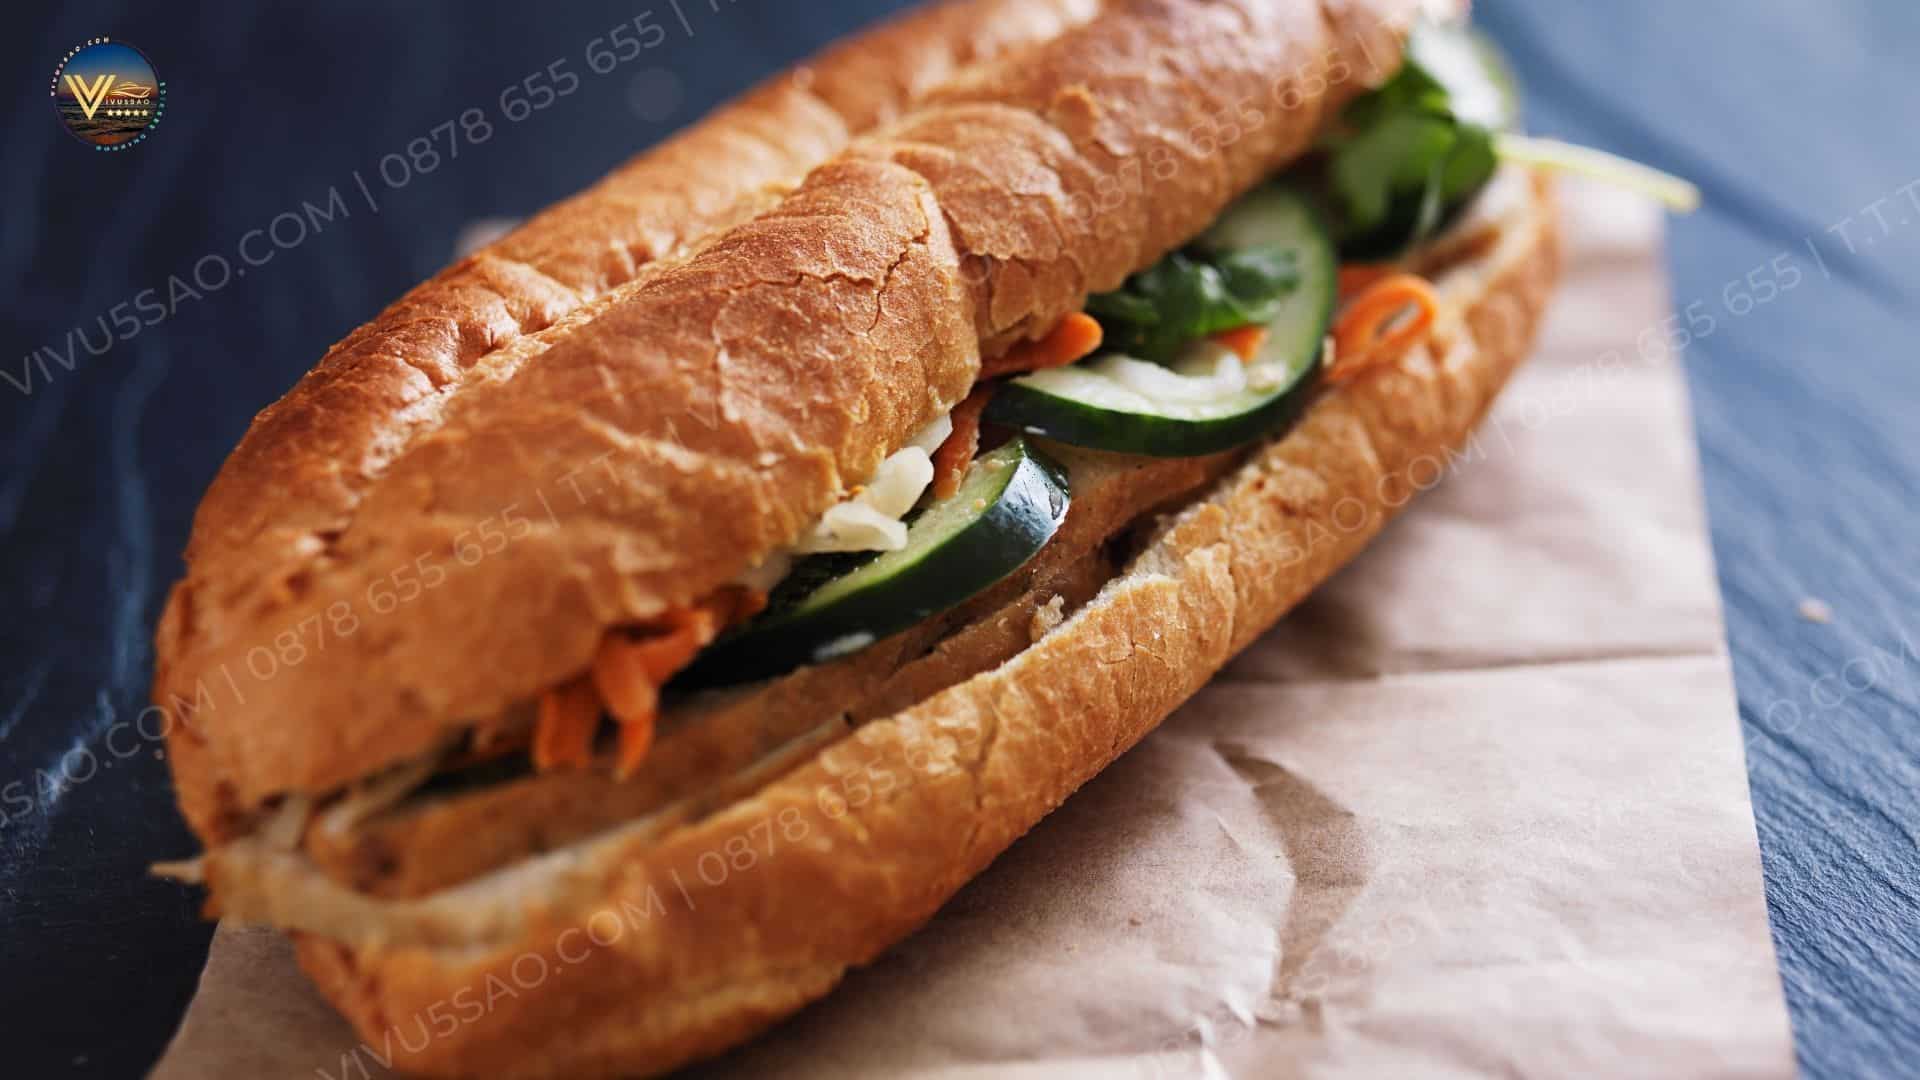 Đỉnh Cao Ẩm Thực Việt: 9 Món Ăn Dân Dã Hấp Dẫn Không Thể Bỏ Lỡ | Bánh mì là món ăn bình dân, phổ biến và rất được ưa thích trên bản đồ ẩm thực Việt.